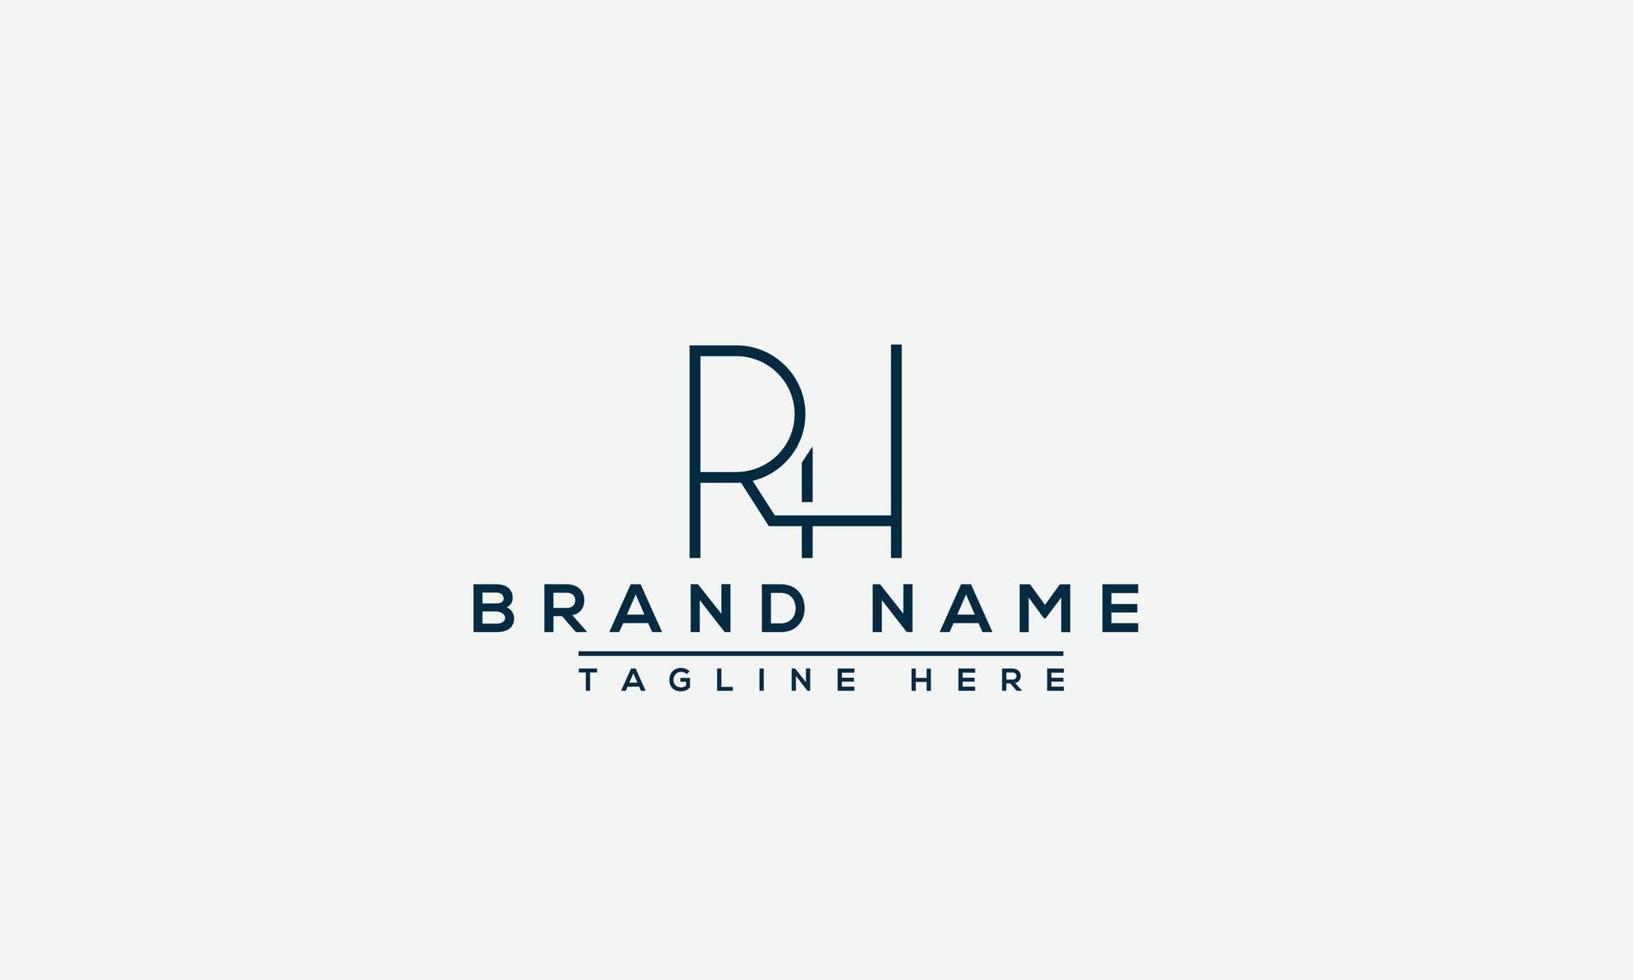 elemento di branding grafico vettoriale del modello di progettazione del logo rh.